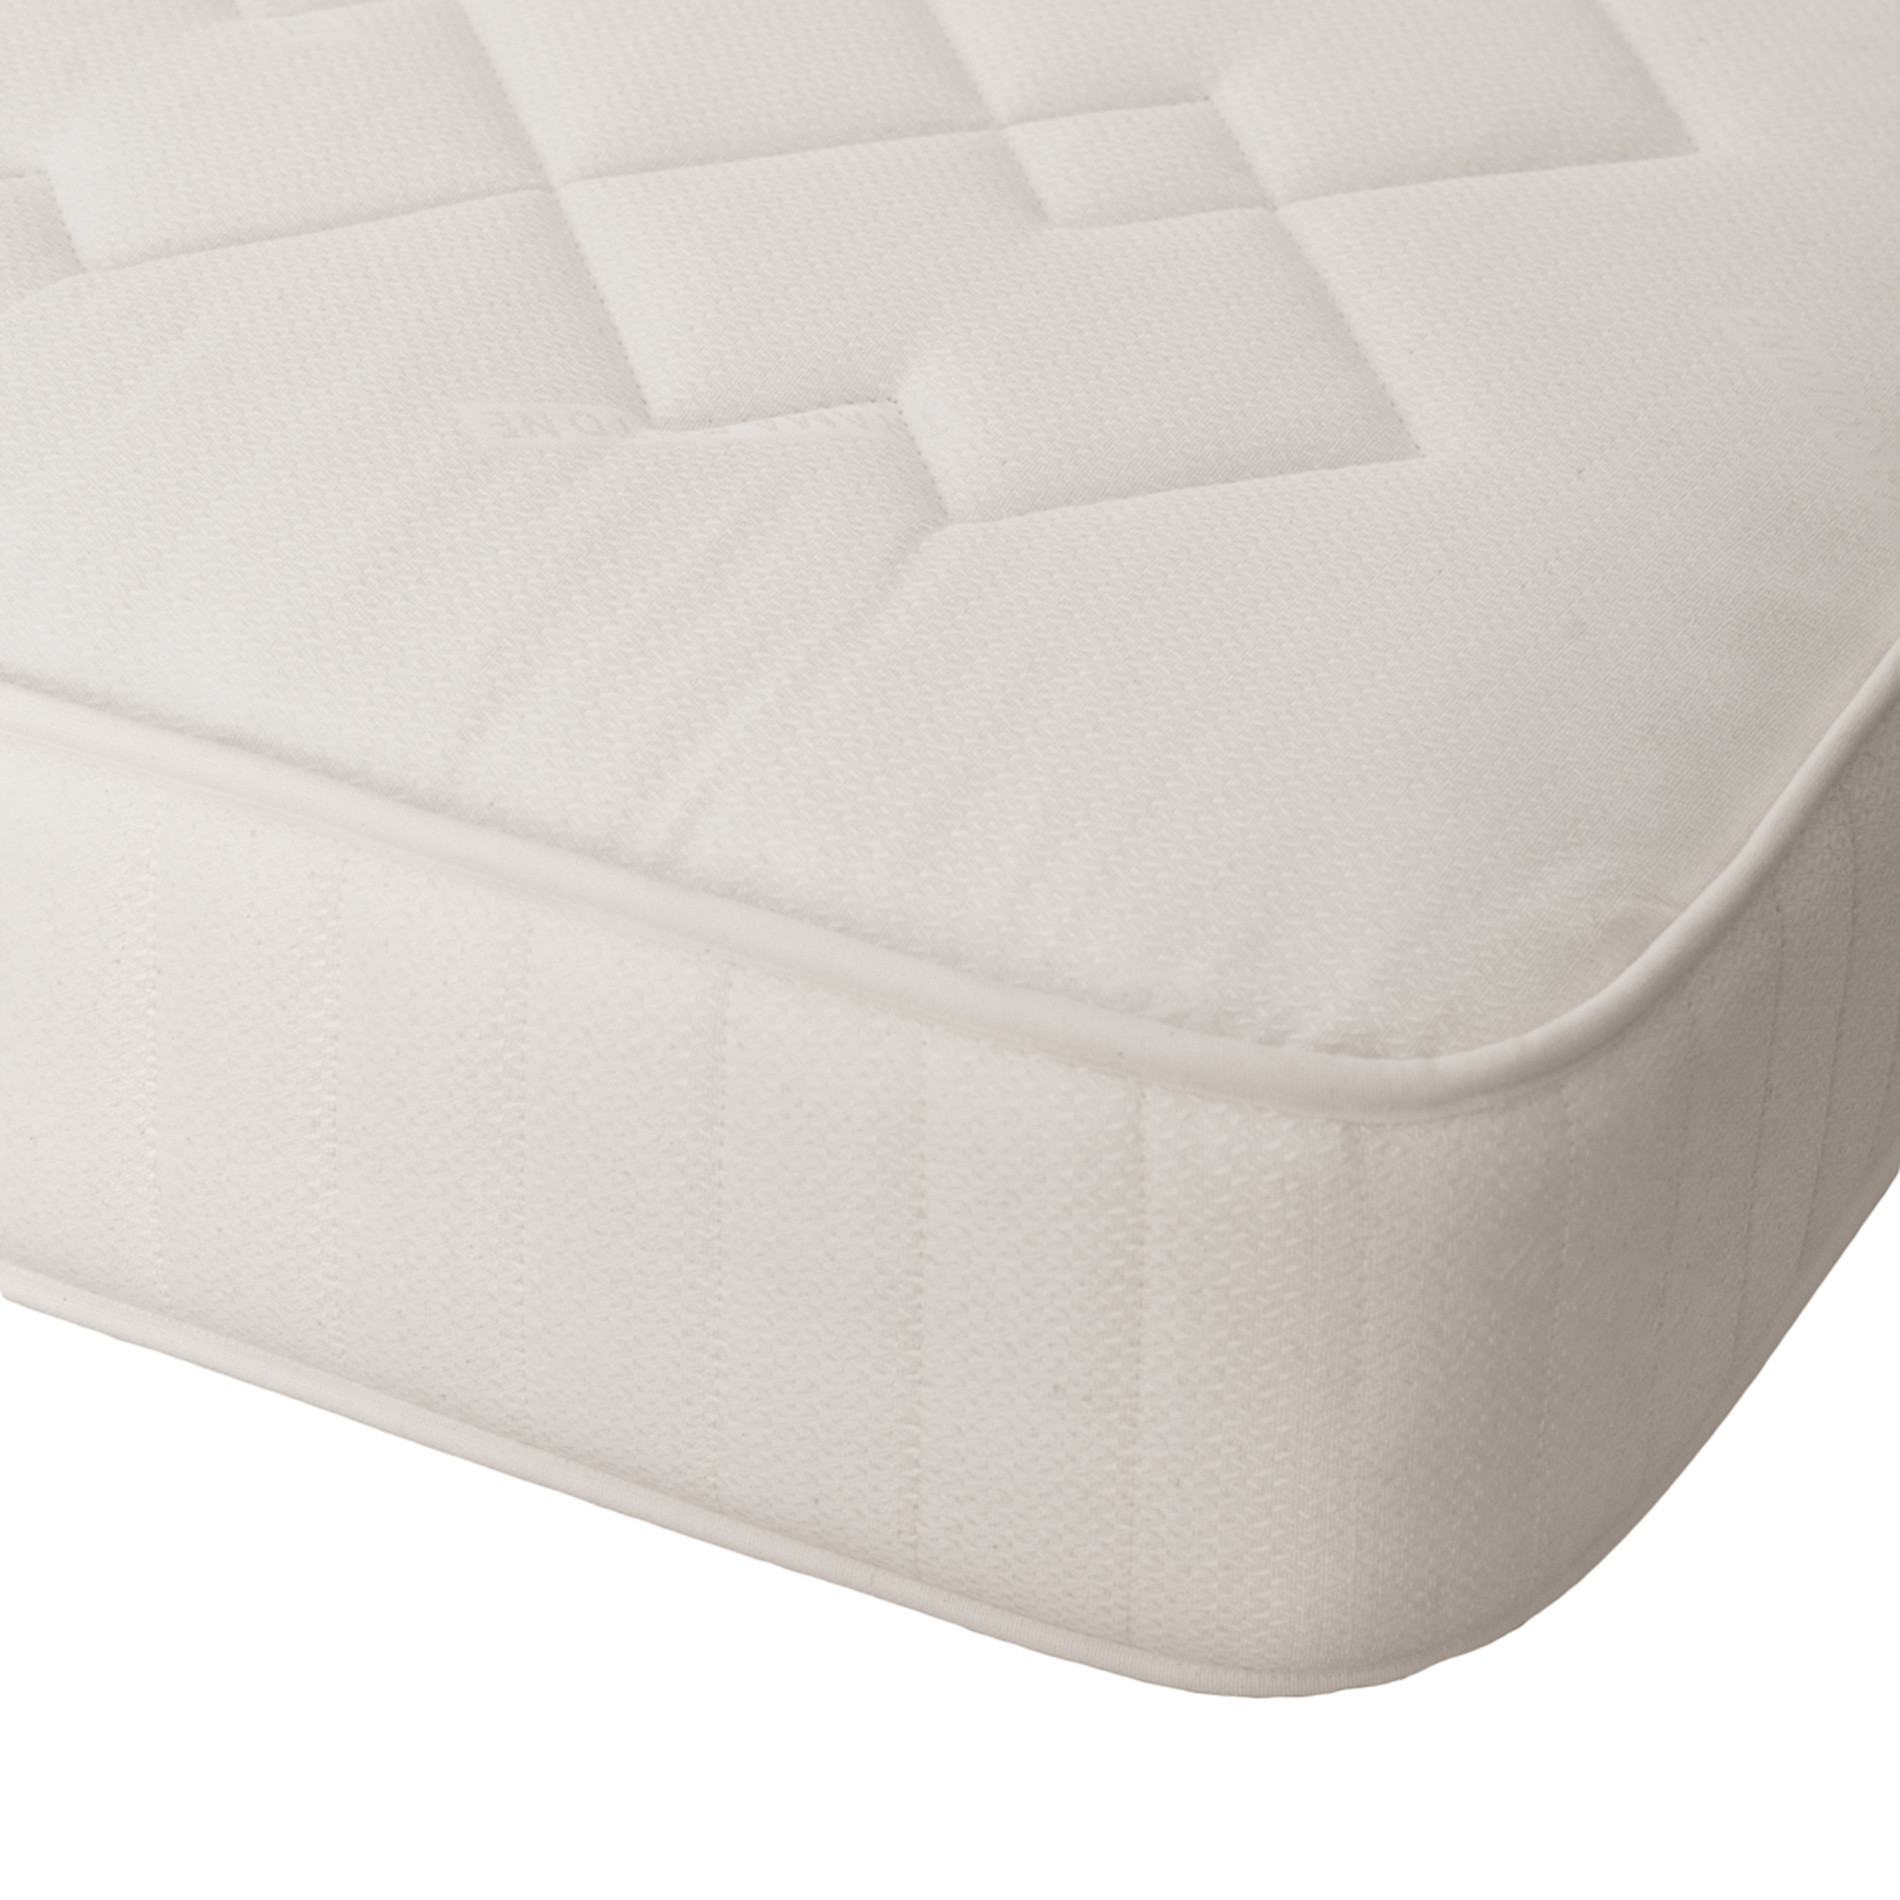 Sprung mattress, White, large image number 2